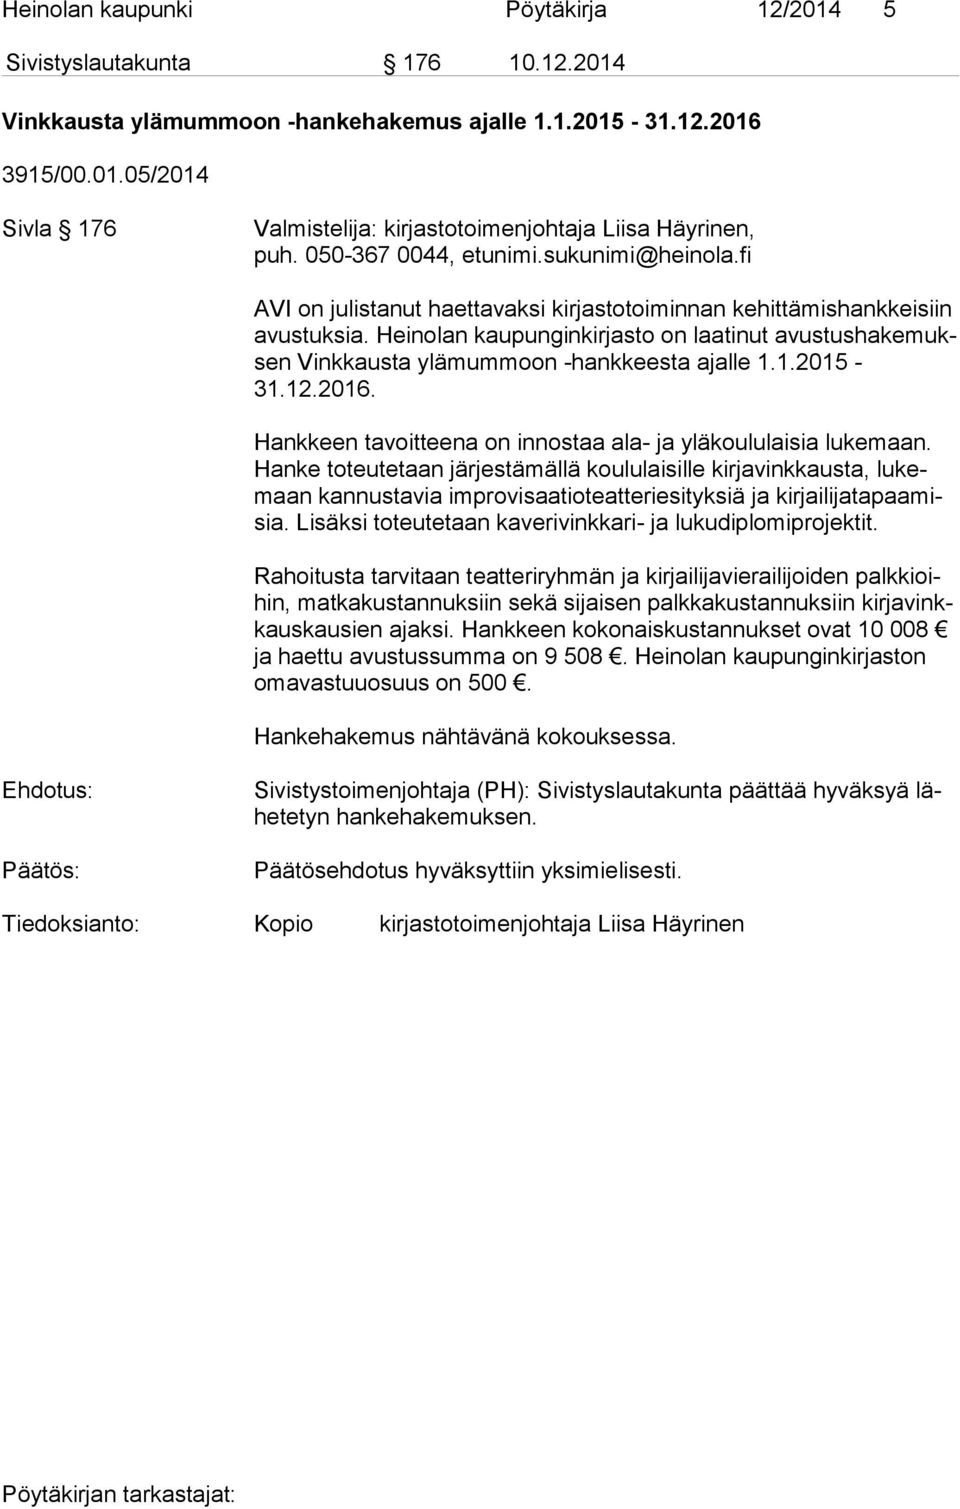 Heinolan kaupunginkirjasto on laatinut avus tus ha ke muksen Vinkkausta ylämummoon -hankkeesta ajalle 1.1.2015-31.12.2016. Hankkeen tavoitteena on innostaa ala- ja yläkoululaisia lukemaan.